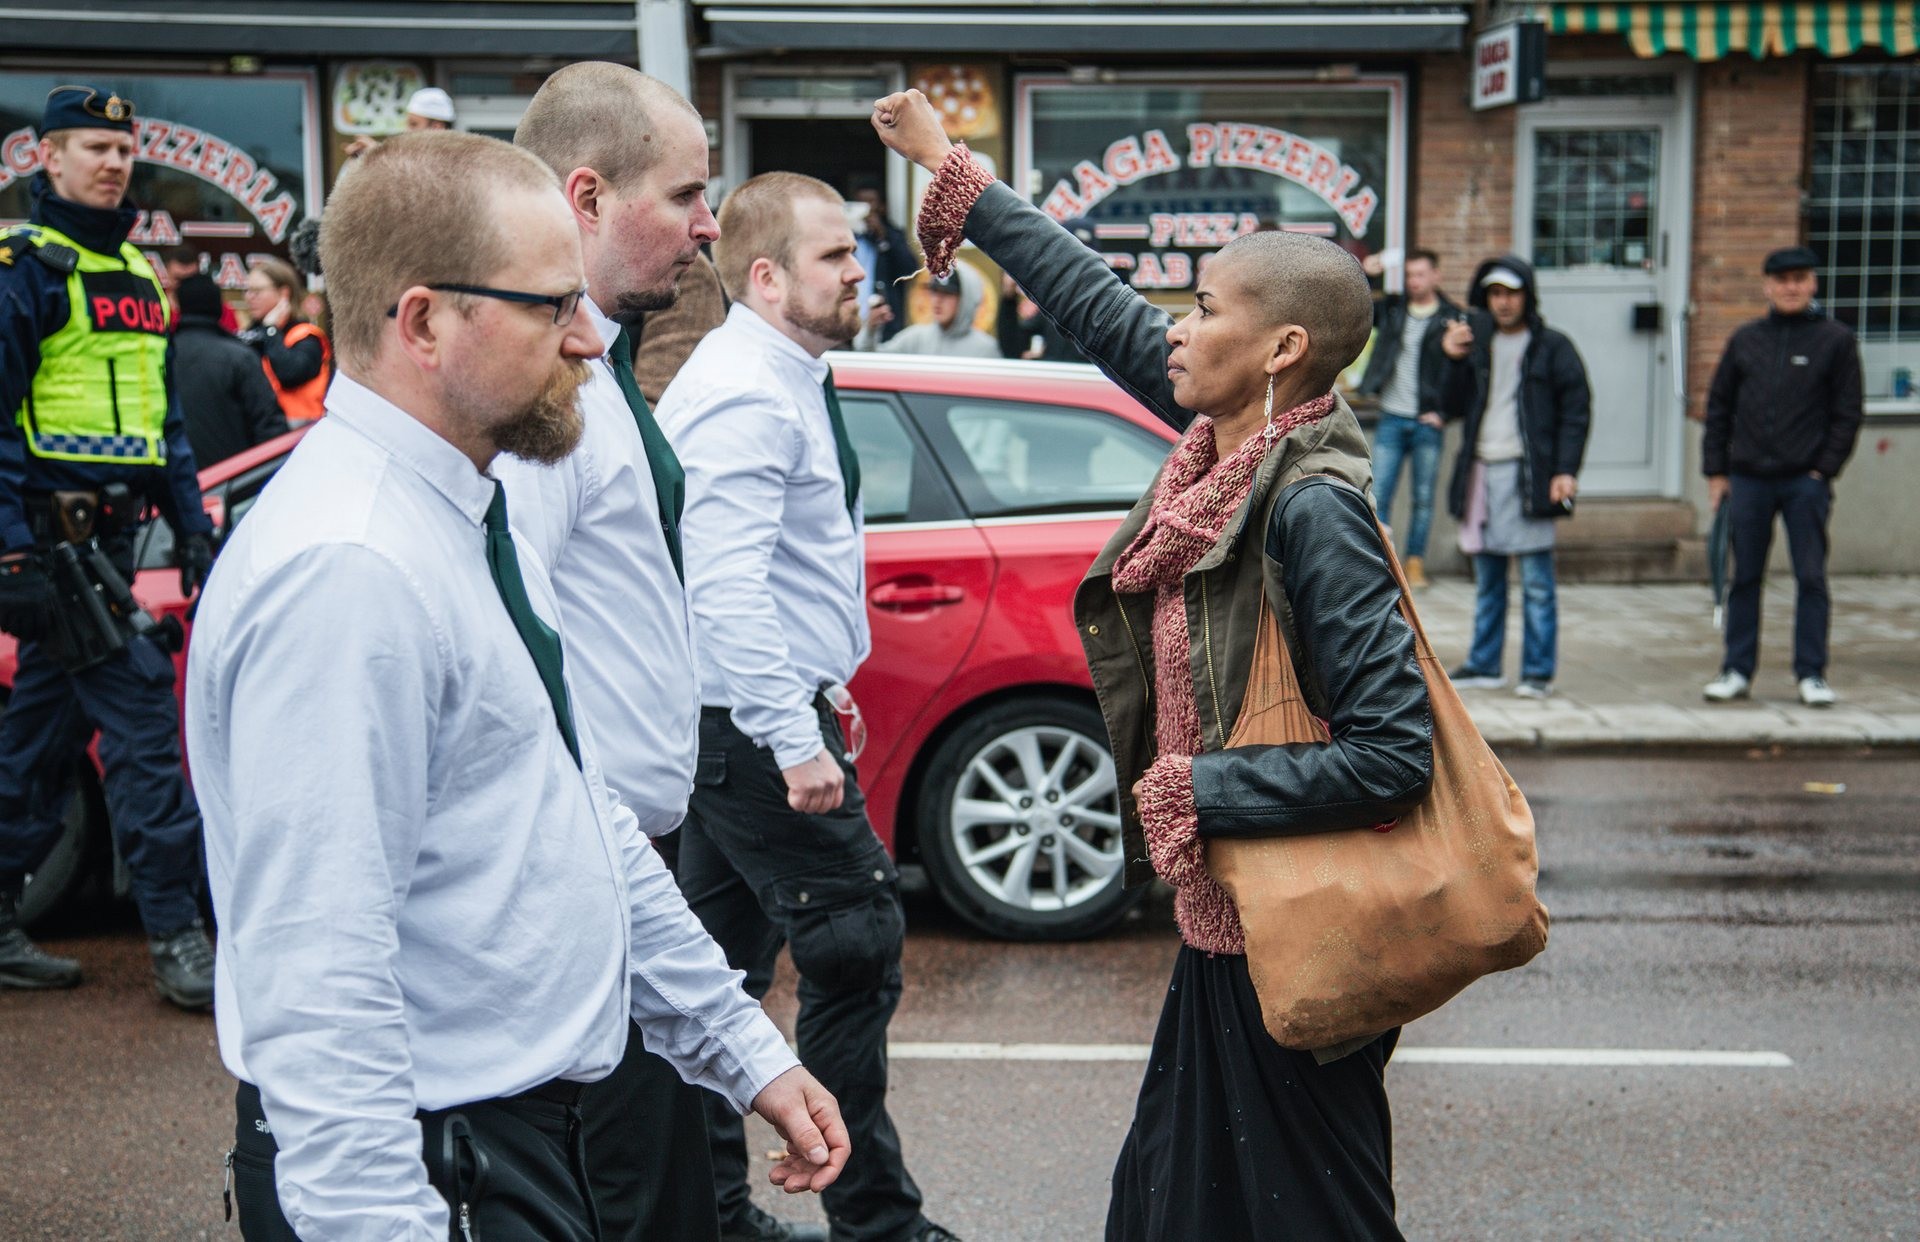 Tess Asplundová sa postavila pred pochod neonacistov vo švédskom meste Borlänge